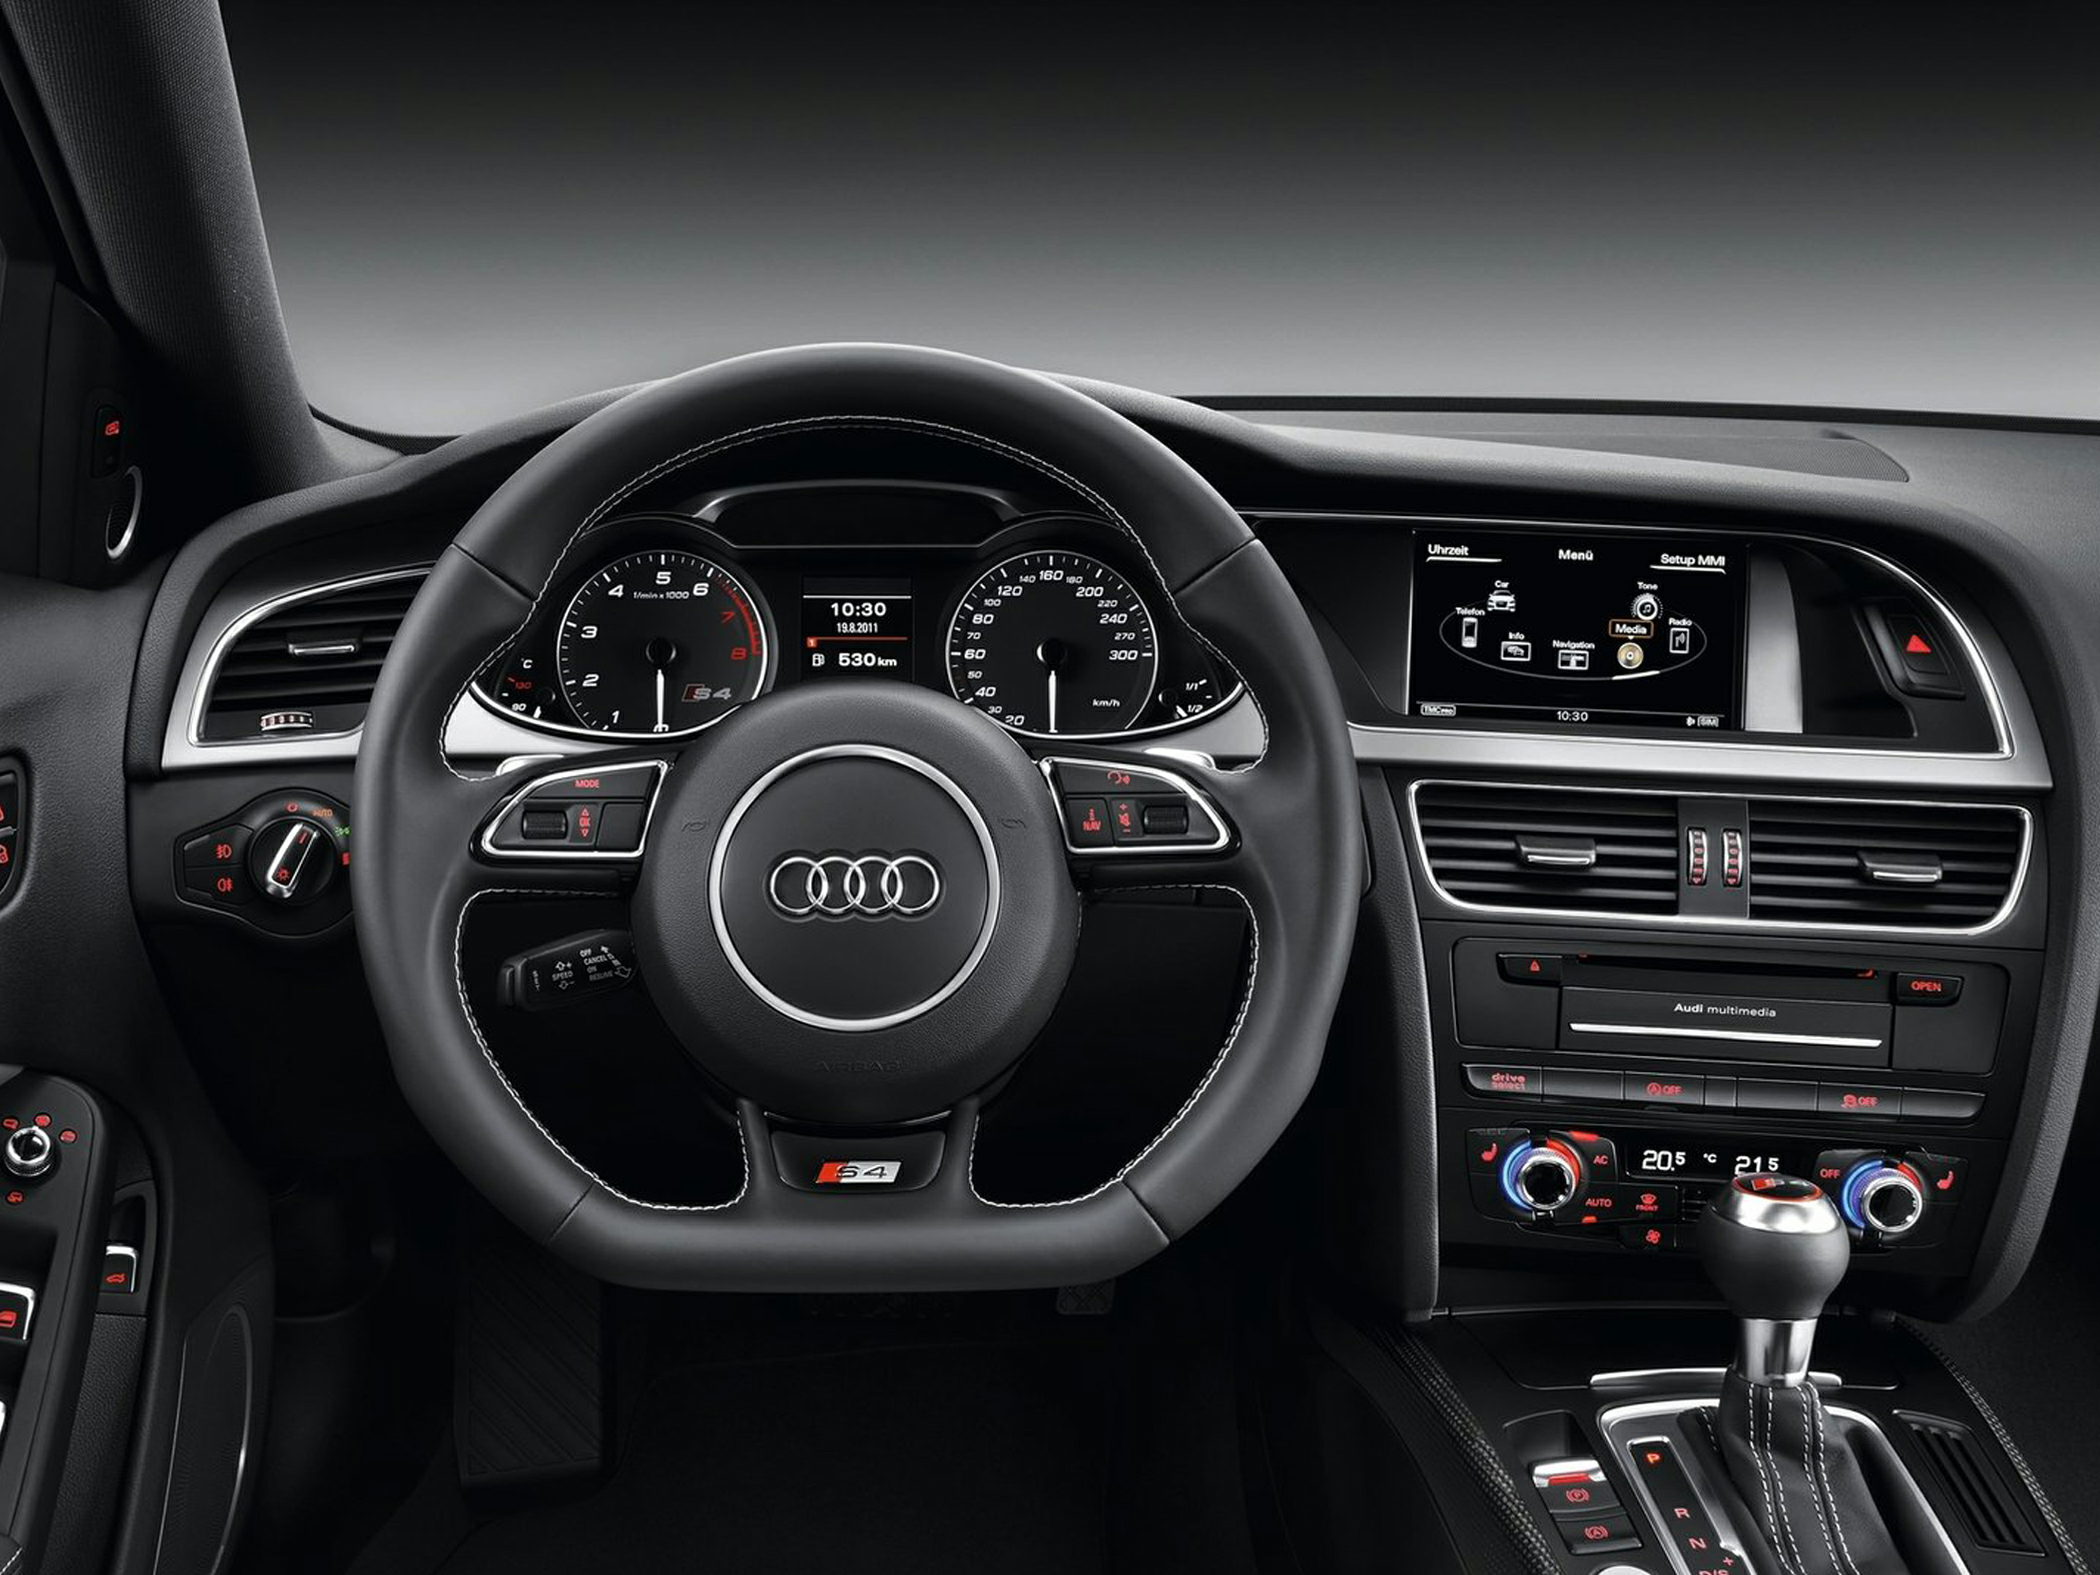 2013 Audi S4